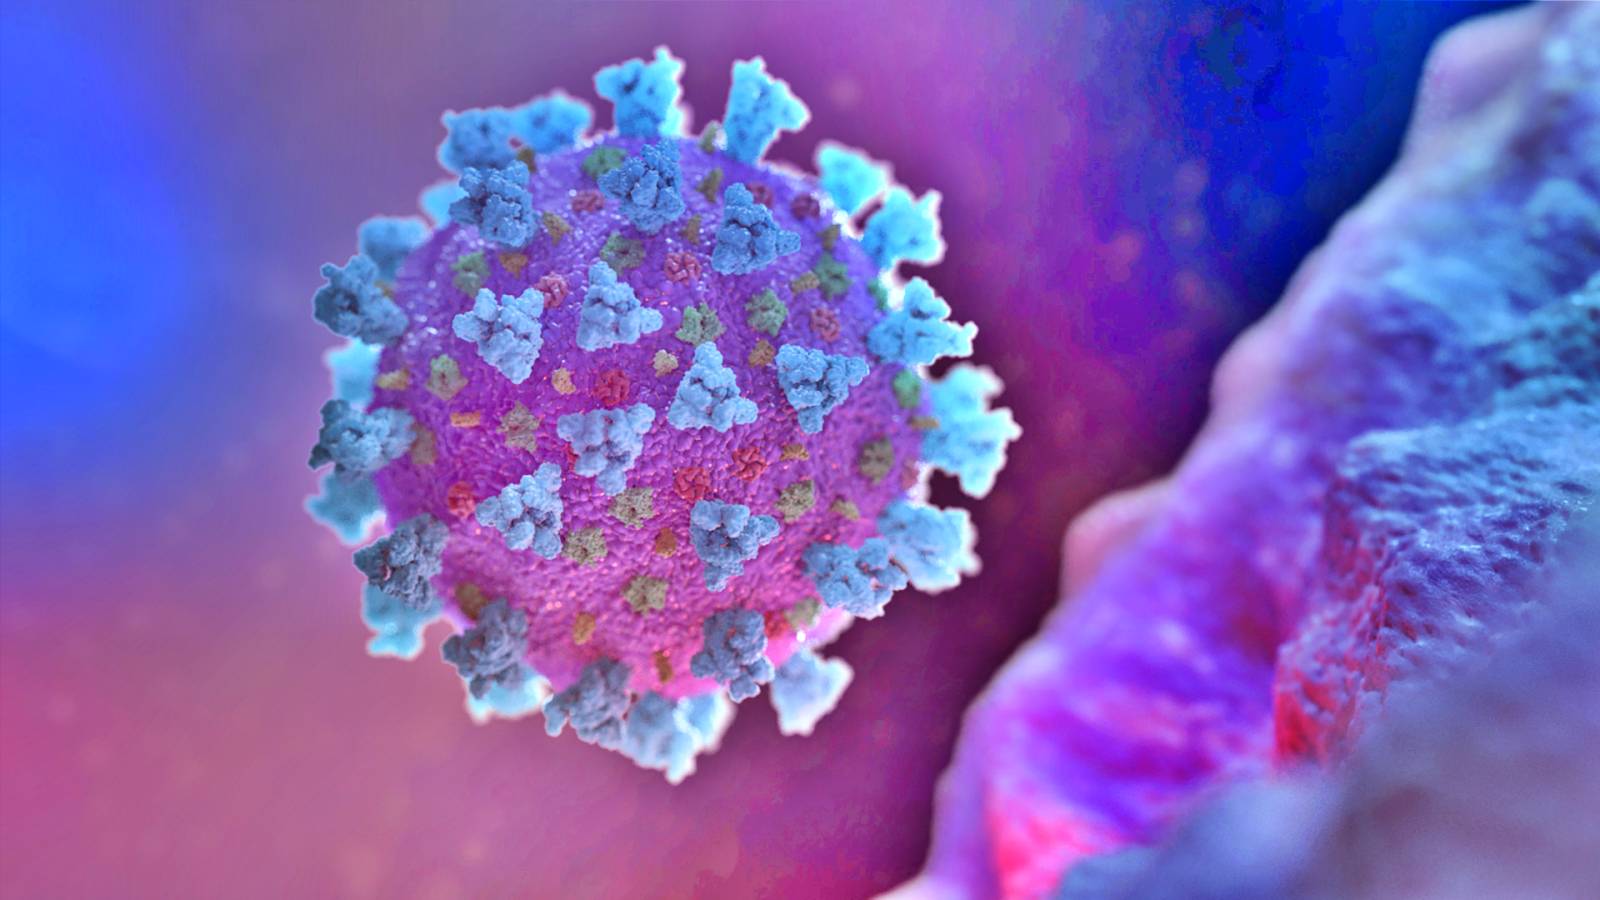 Romanian koronavirus Suuri määrä uusia tapauksia 25. elokuuta 2021